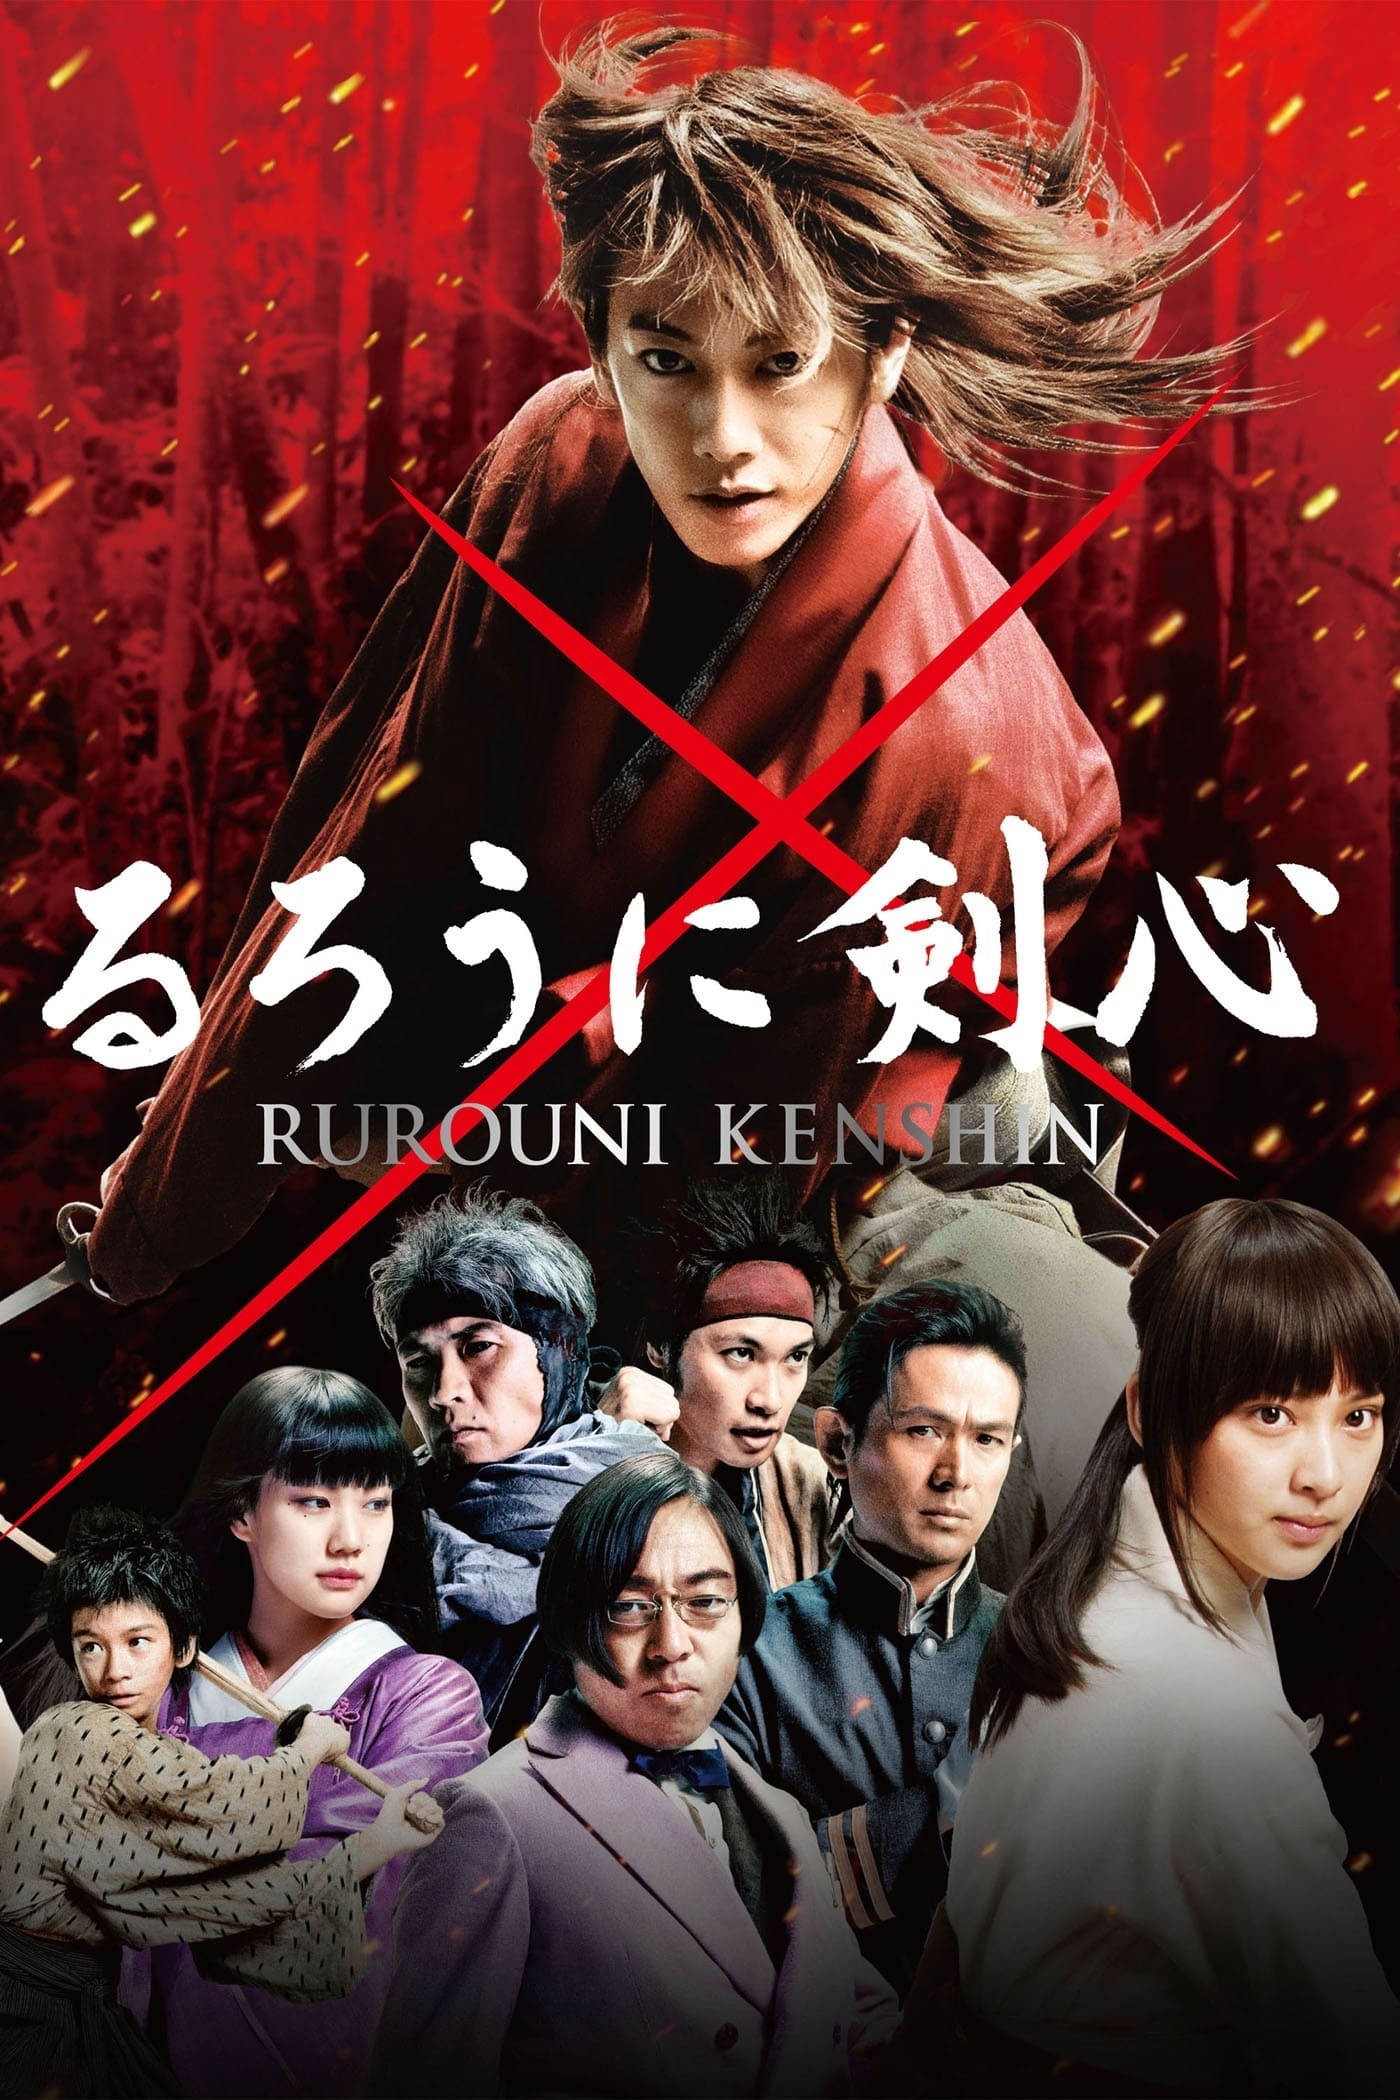 Rurouni Kenshin film